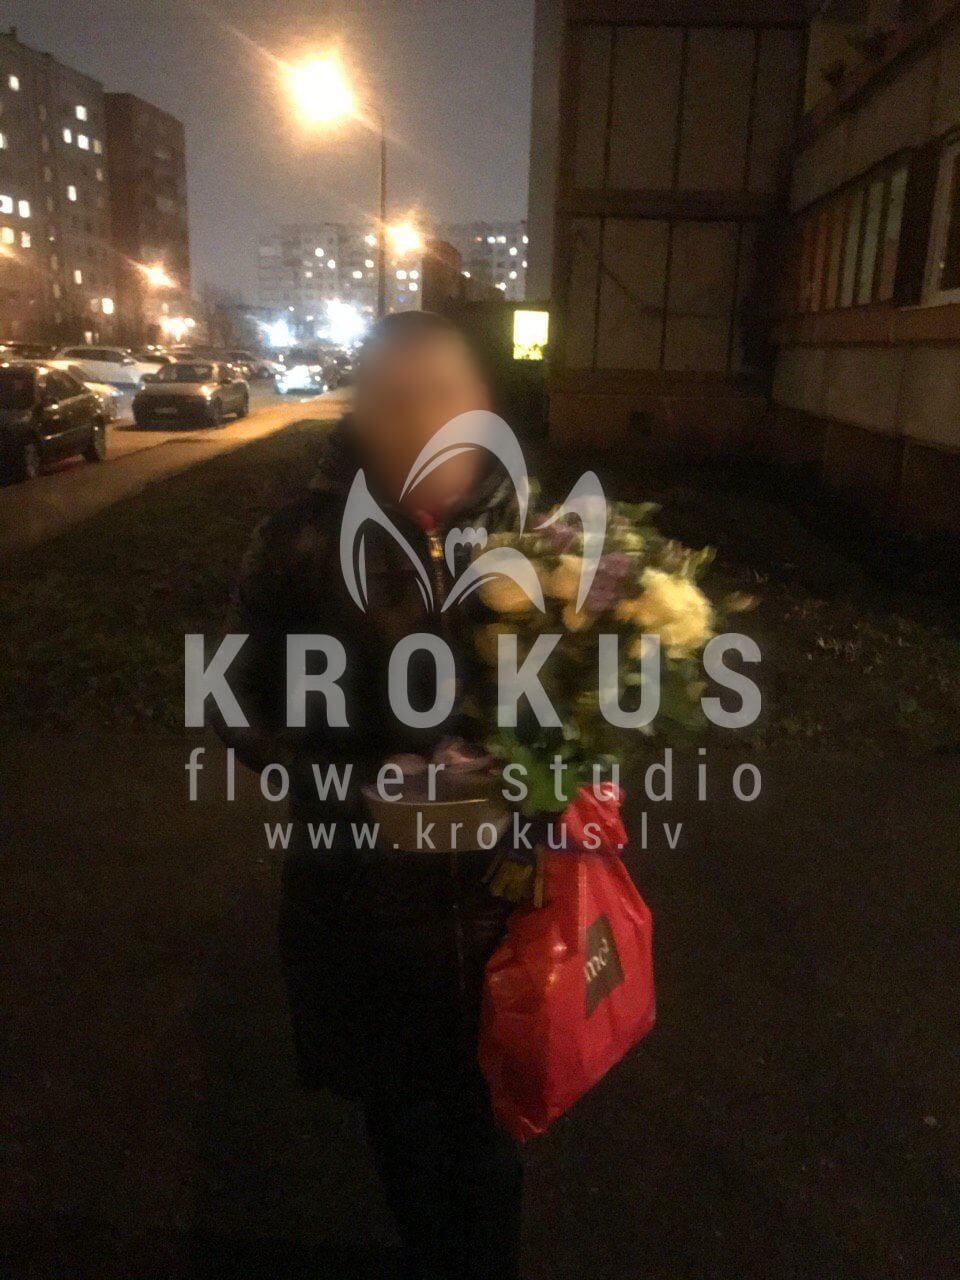 Доставка цветов в город Рига (кустовые розыматтиолабелые розываксфлауэрсалалпиттоспорум)